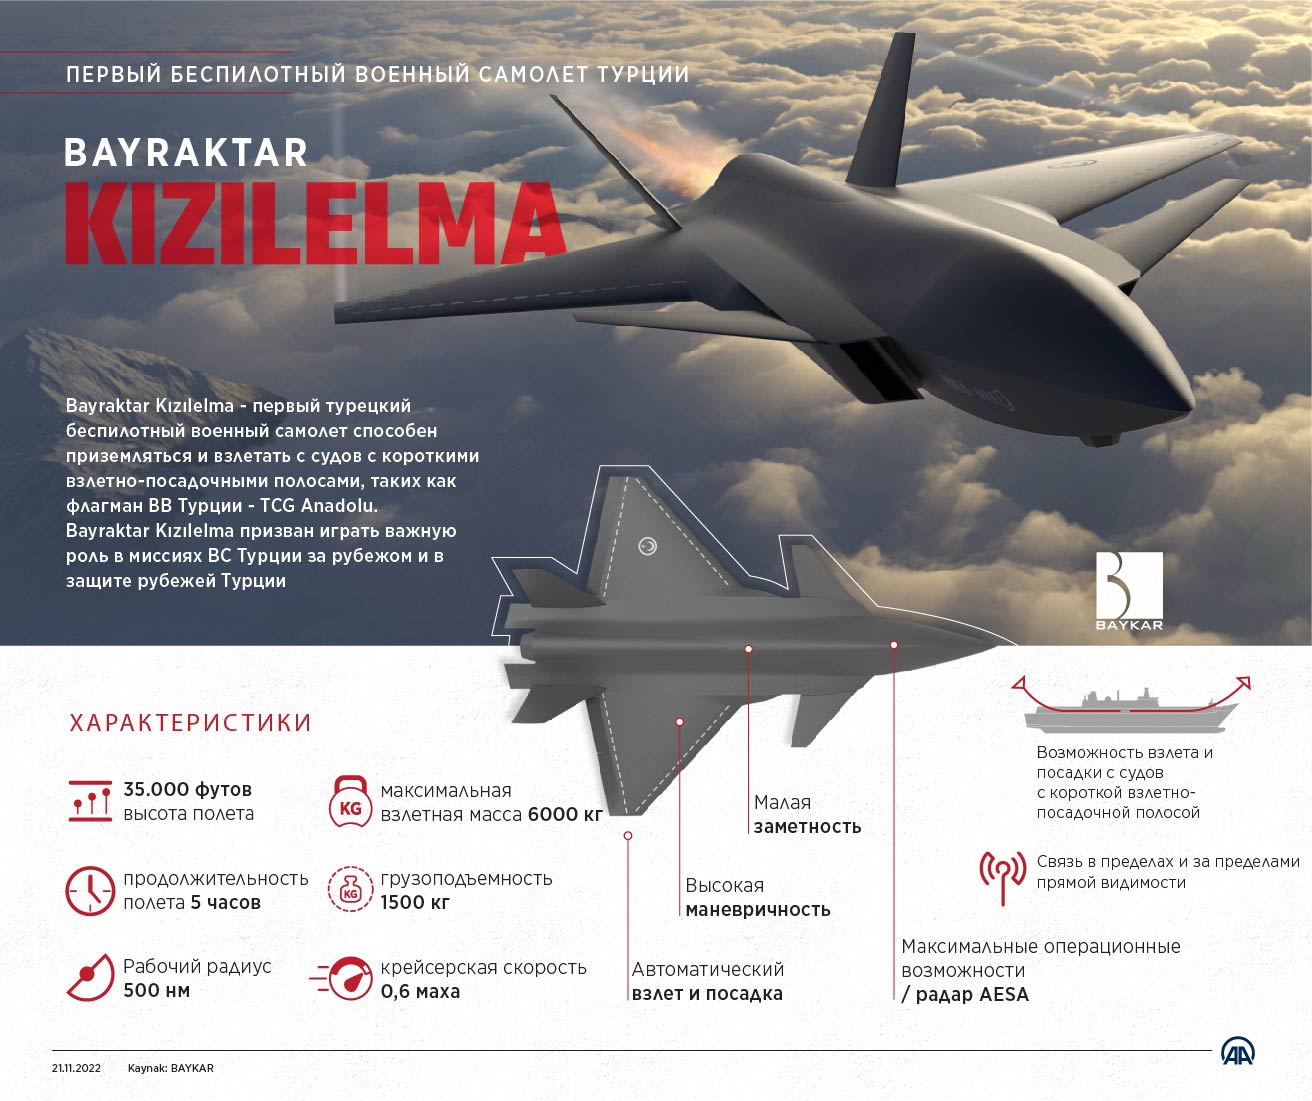 Первый беспилотный военный самолет Турции: Bayraktar Kızılelma